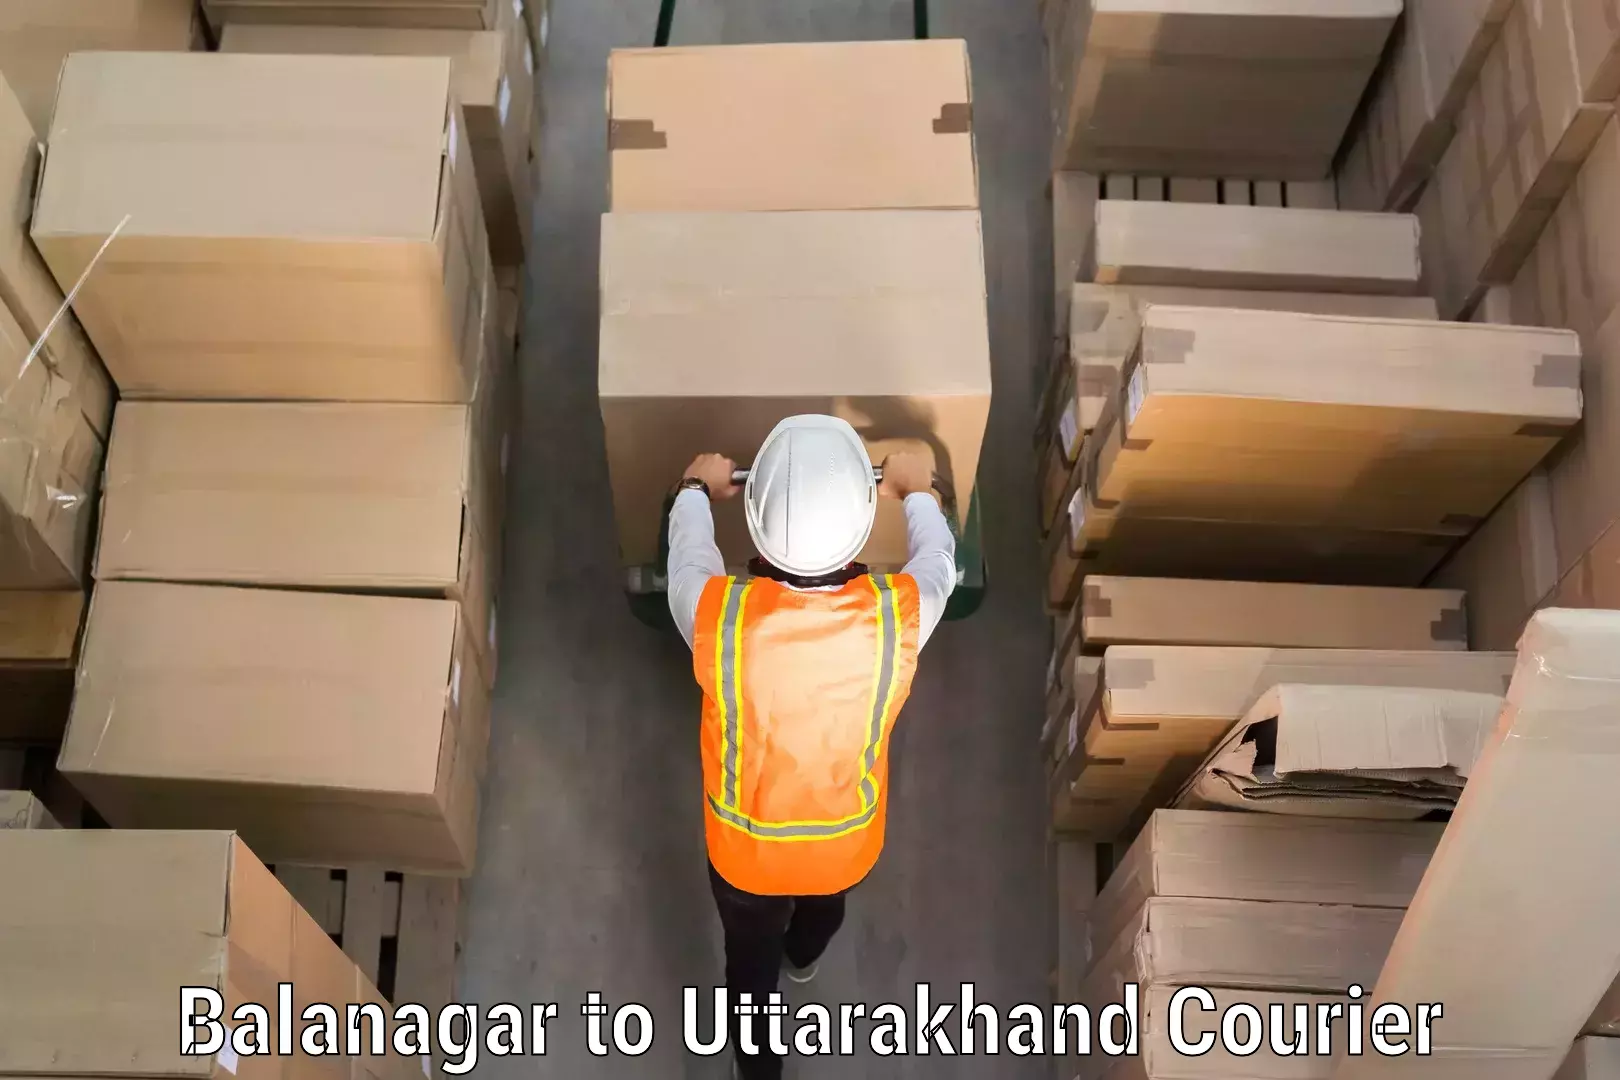 Personal effects shipping in Balanagar to Kotdwara